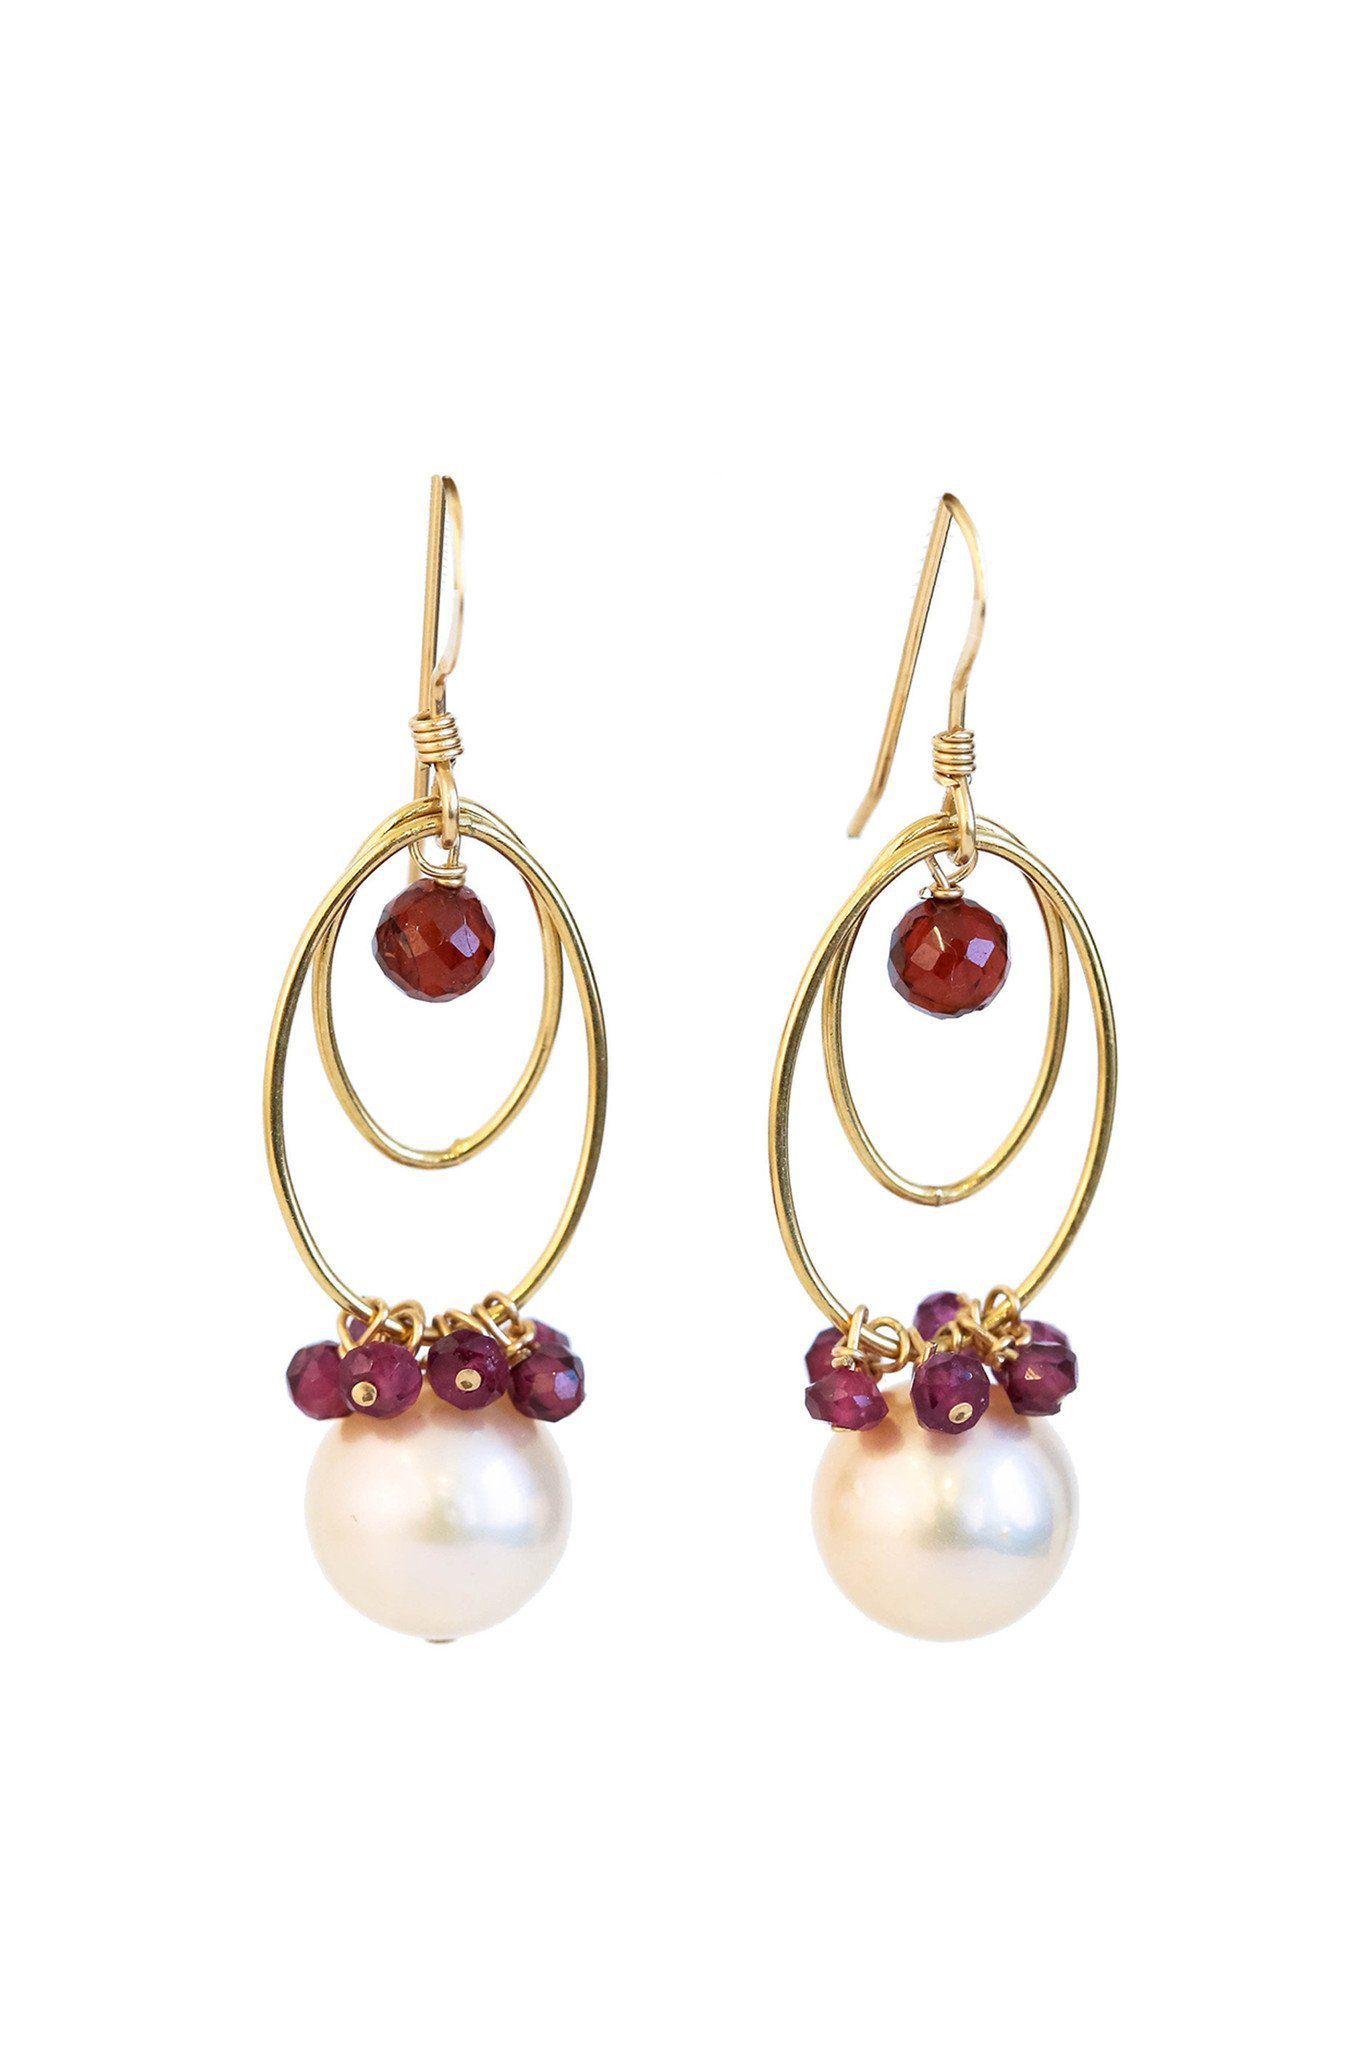 Buy White Freshwater Pearl And Garnet Loop Earrings In Gold Online - INAYA